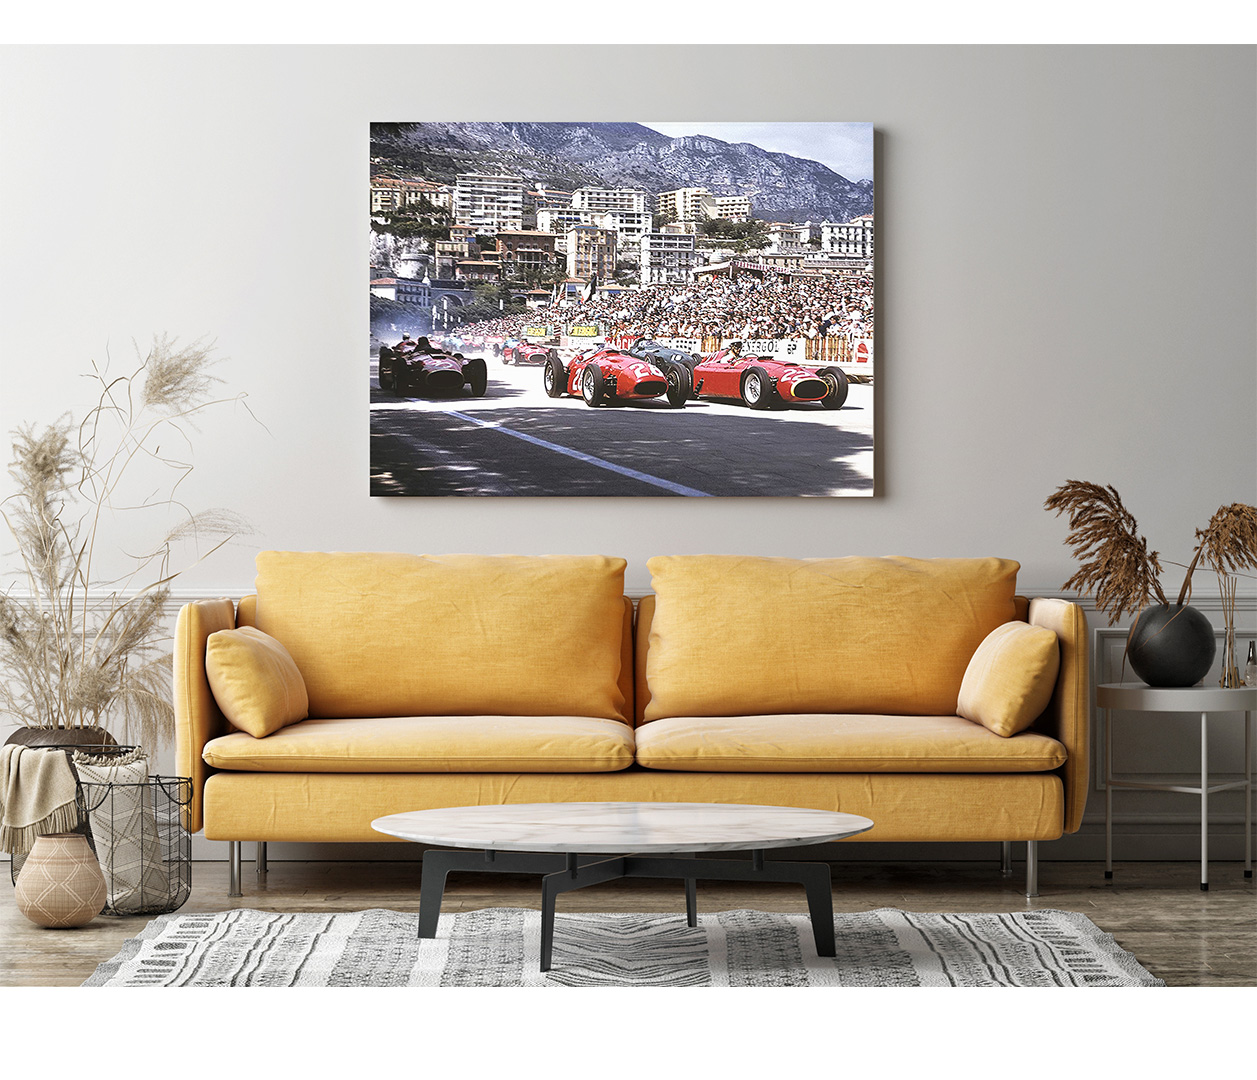 Grand Prix Monaco - 1956